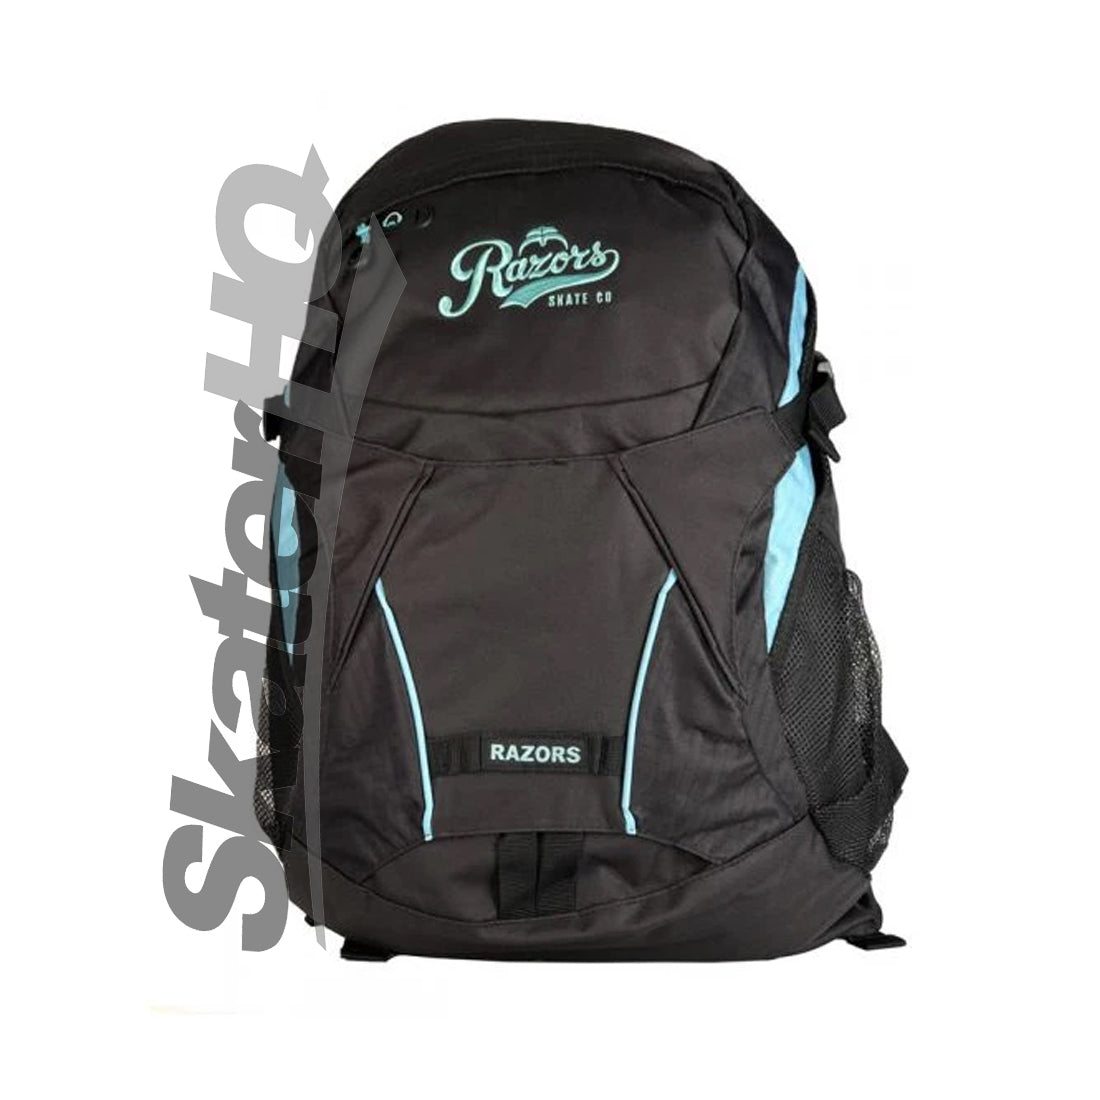 Razors Humble Backpack - Black/Mint Bags and Backpacks